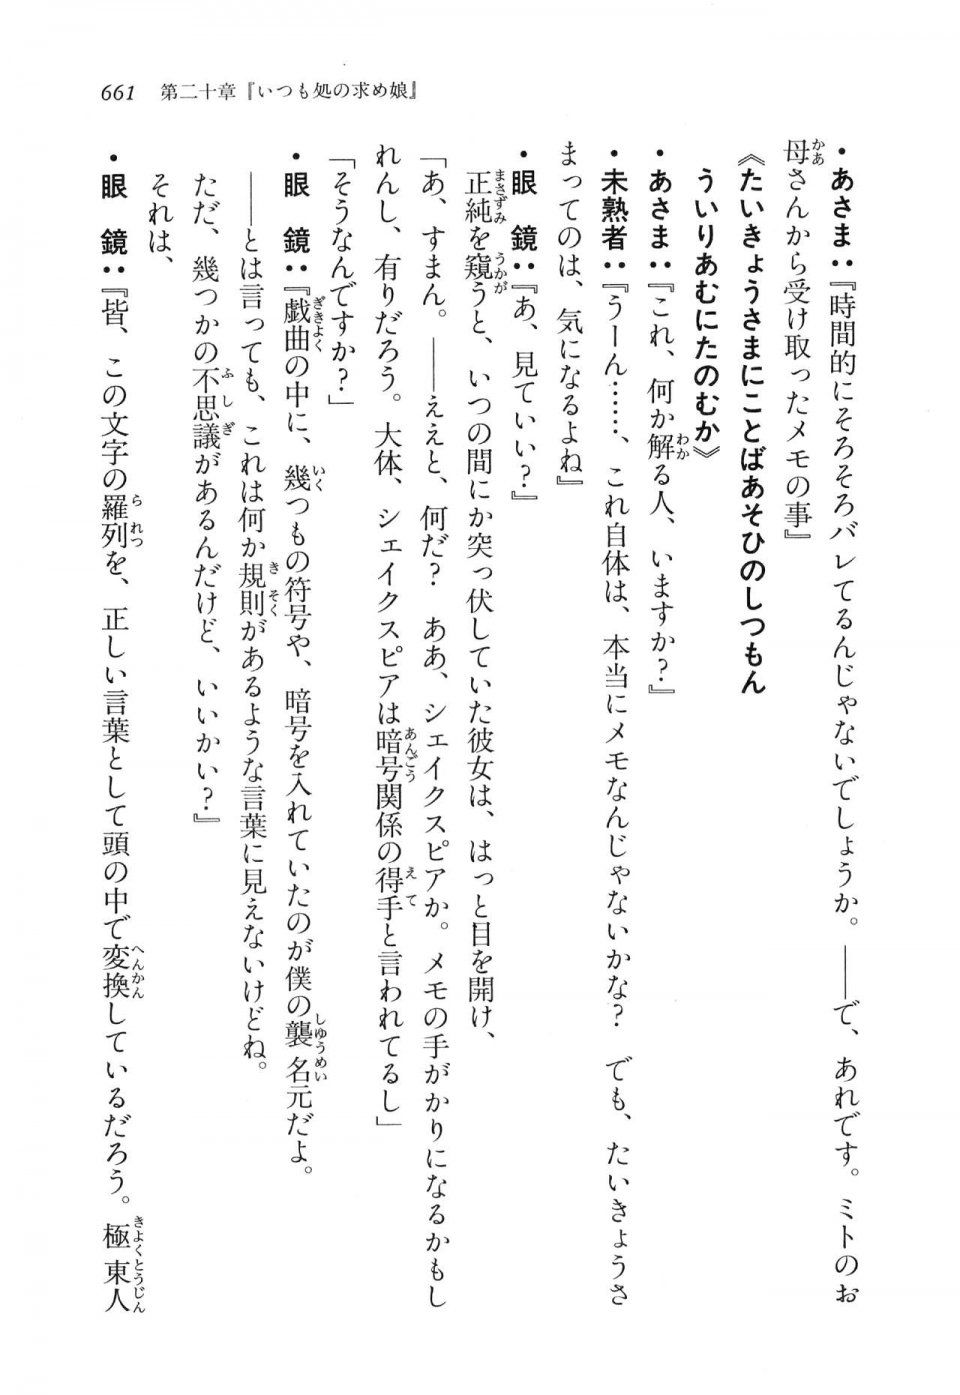 Kyoukai Senjou no Horizon LN Vol 16(7A) - Photo #661